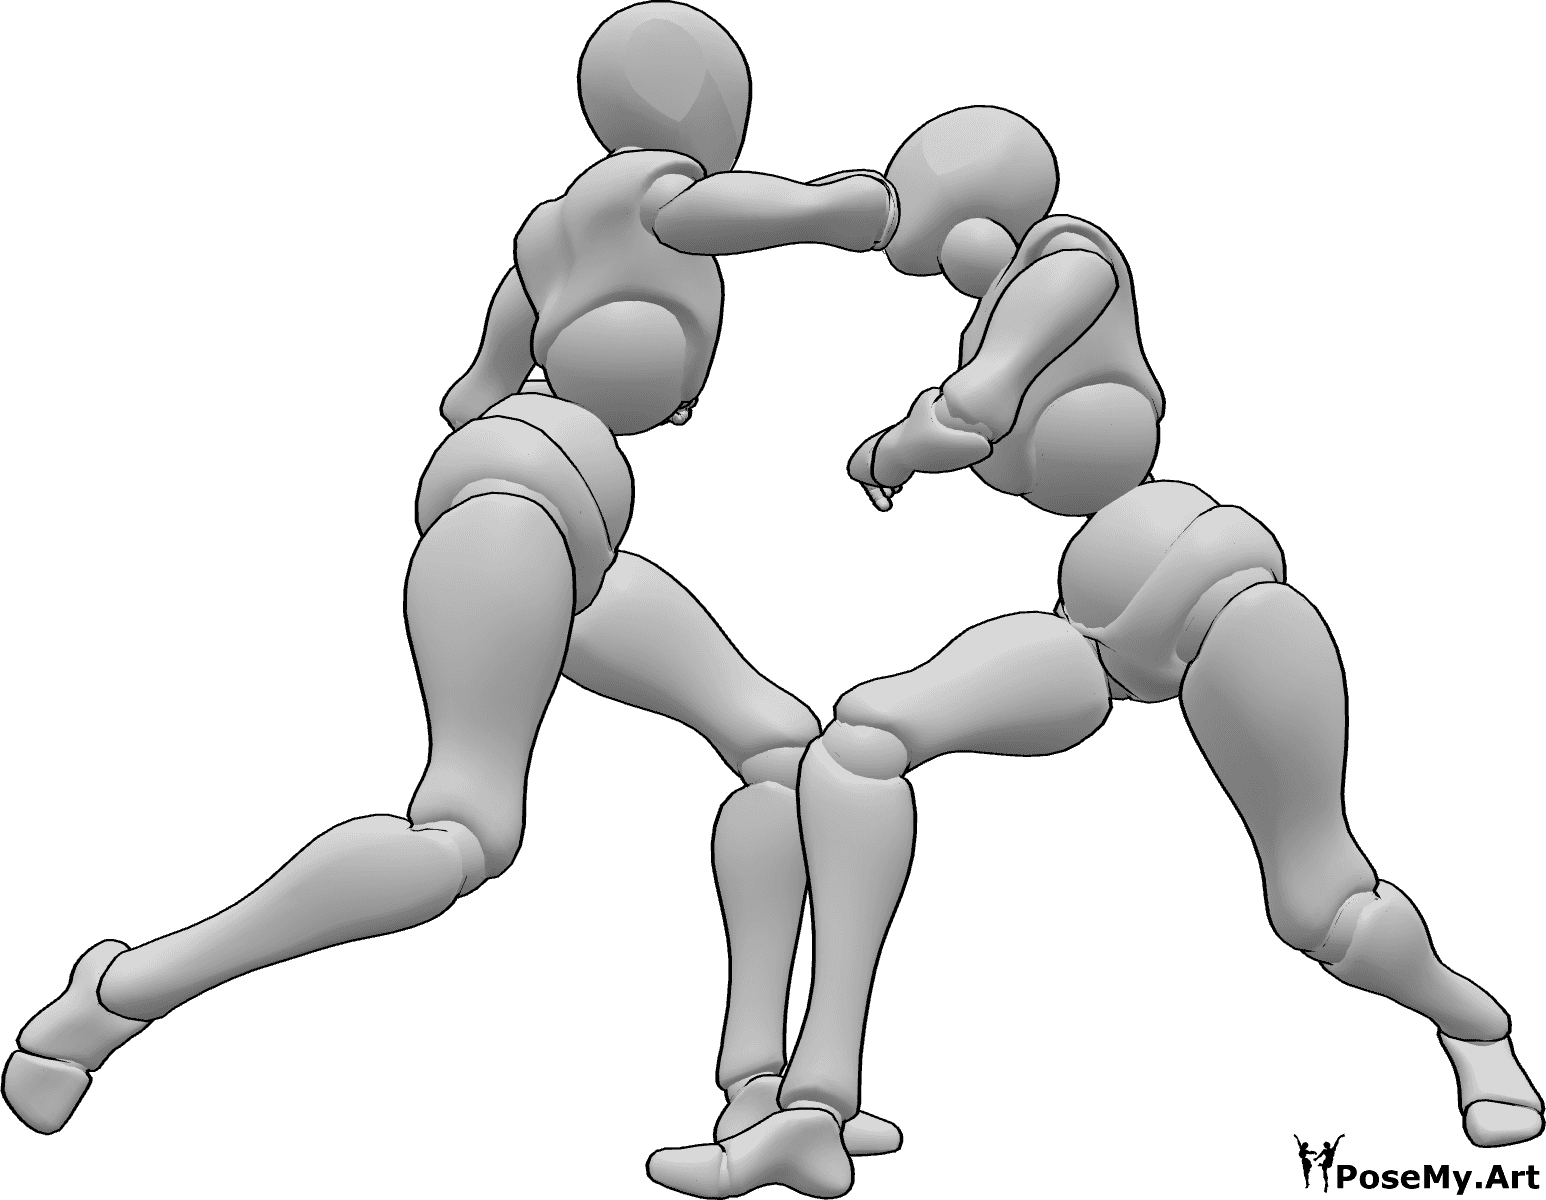 Référence des poses- Pose d'attaque féminine - Une femme attaque l'autre femme avec un coup de coude, référence d'une pose d'attaque féminine